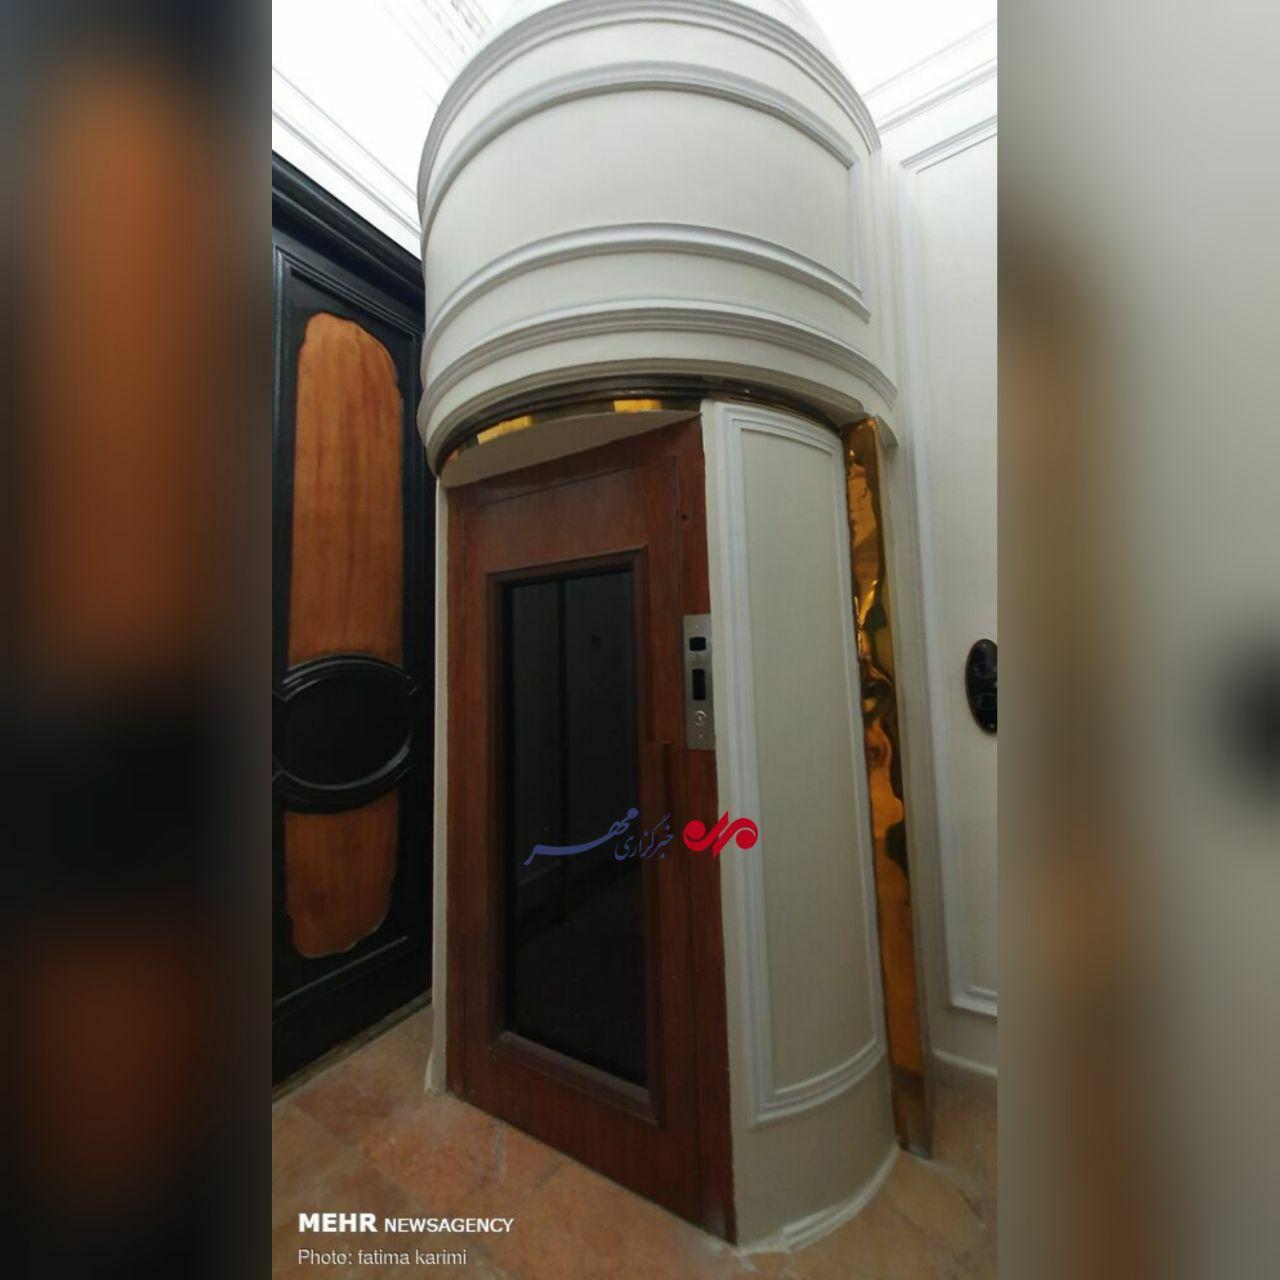 تصویری عجیب از آسانسور در کاخ مرمر